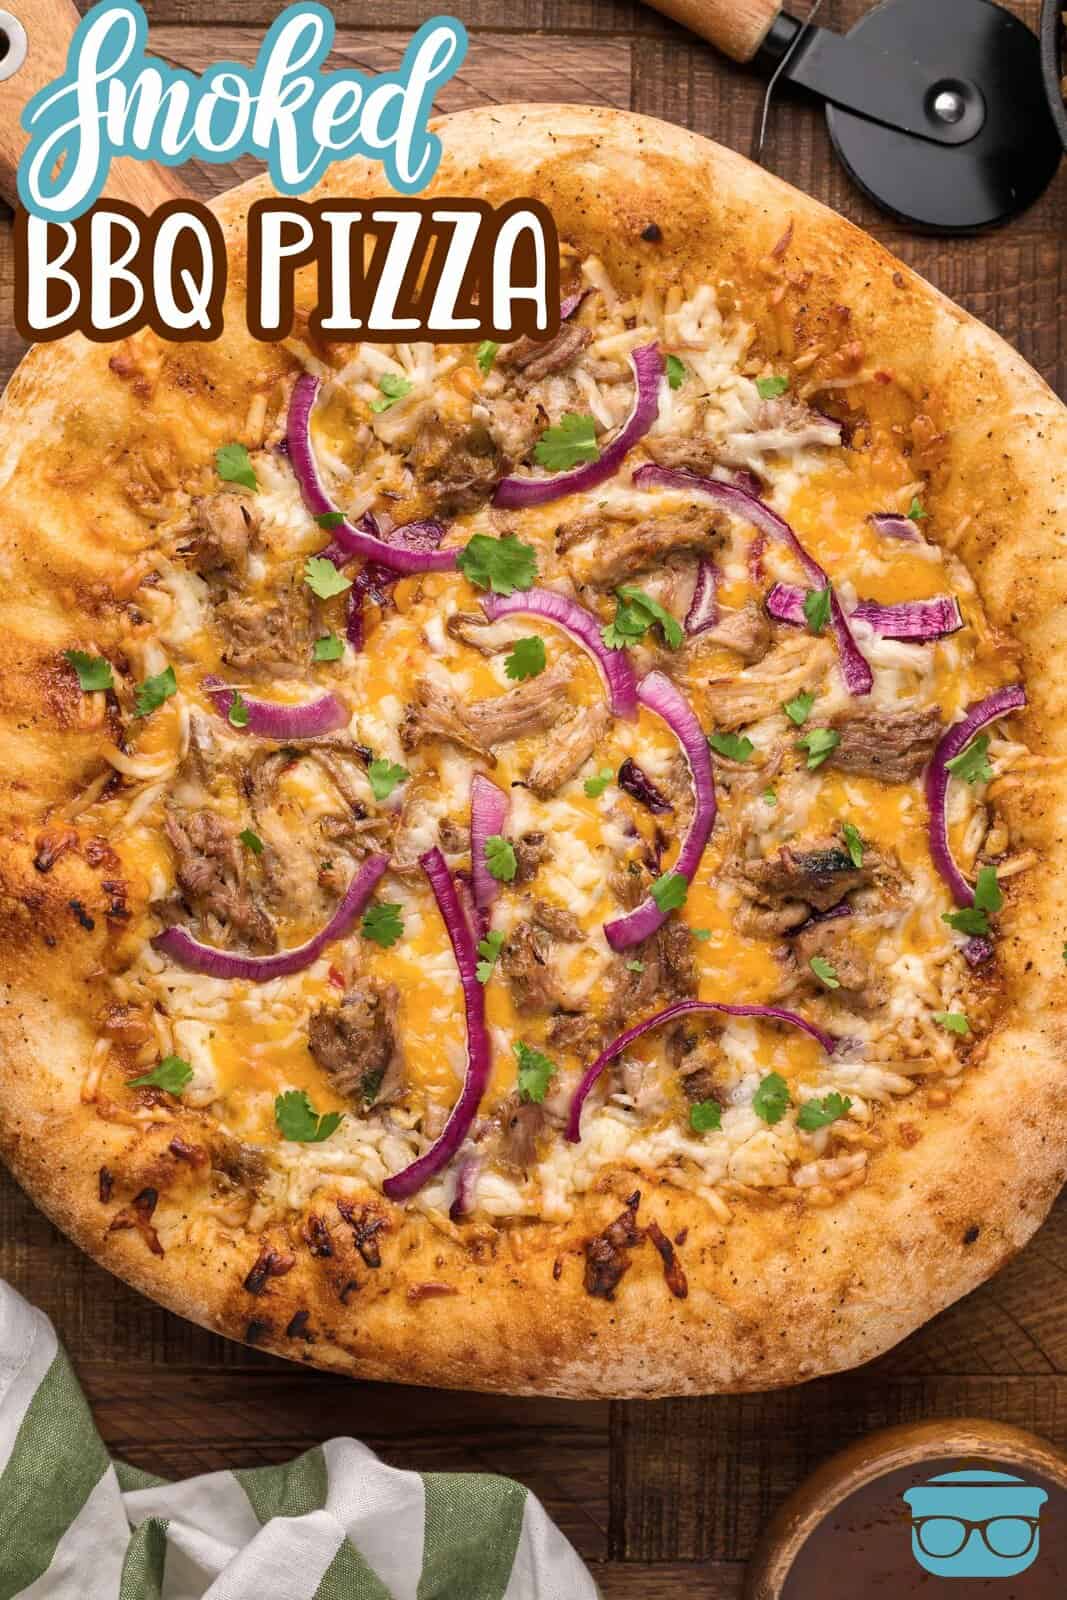 Sovraccarico dell'immagine Pinterest di pizza affumicata con barbecue finita.